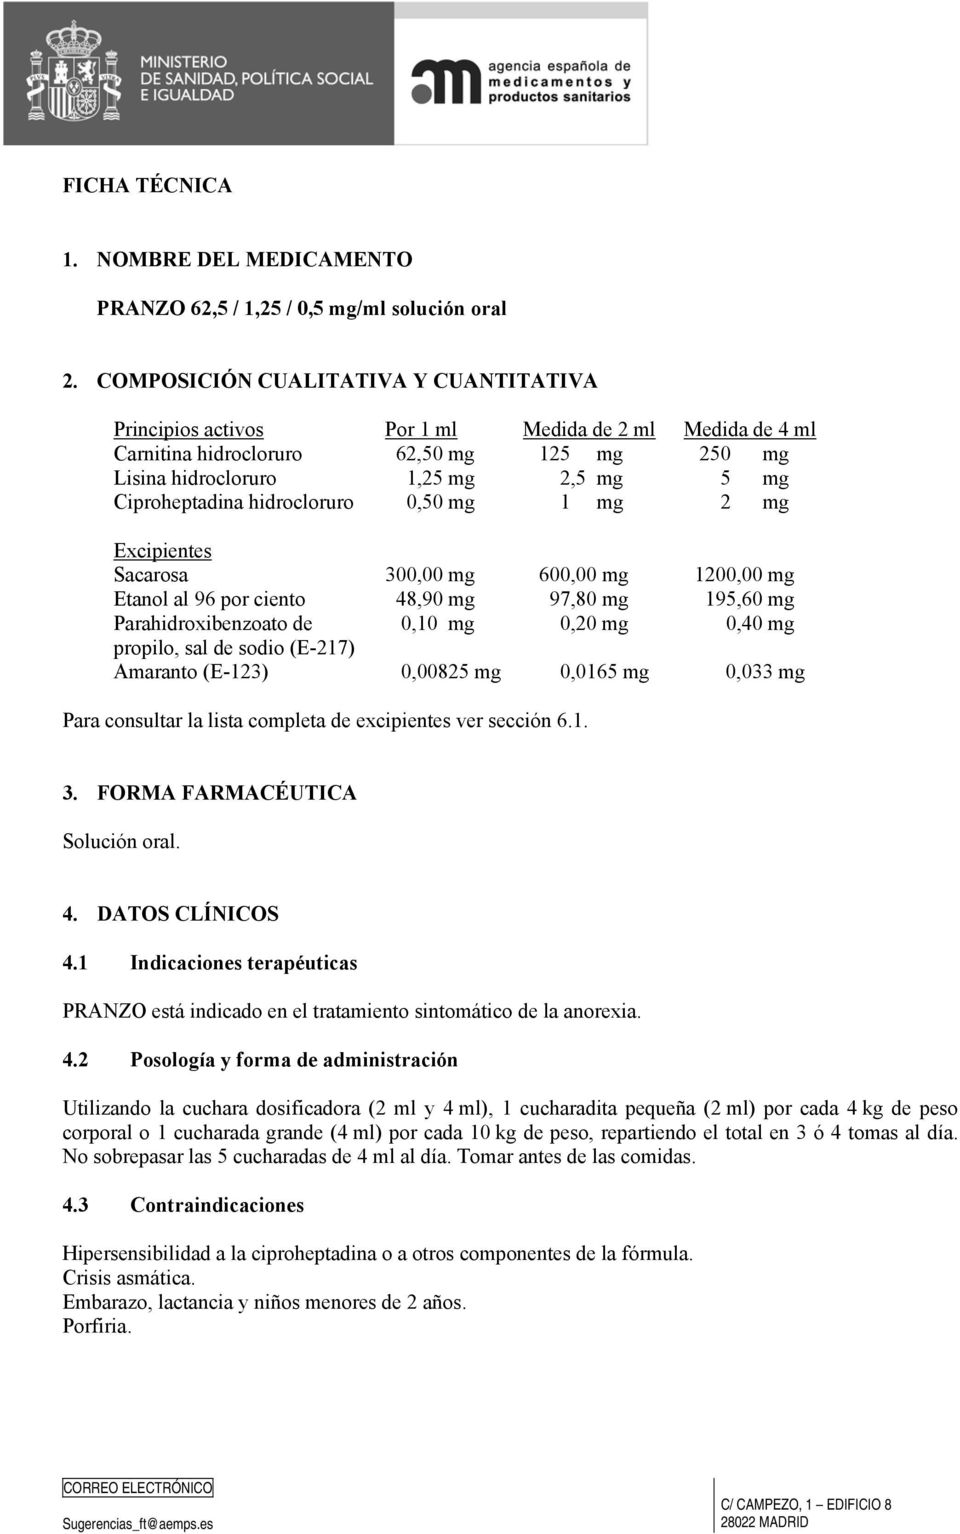 hidrocloruro 0,50 mg 1 mg 2 mg Excipientes Sacarosa 300,00 mg 600,00 mg 1200,00 mg Etanol al 96 por ciento 48,90 mg 97,80 mg 195,60 mg Parahidroxibenzoato de 0,10 mg 0,20 mg 0,40 mg propilo, sal de